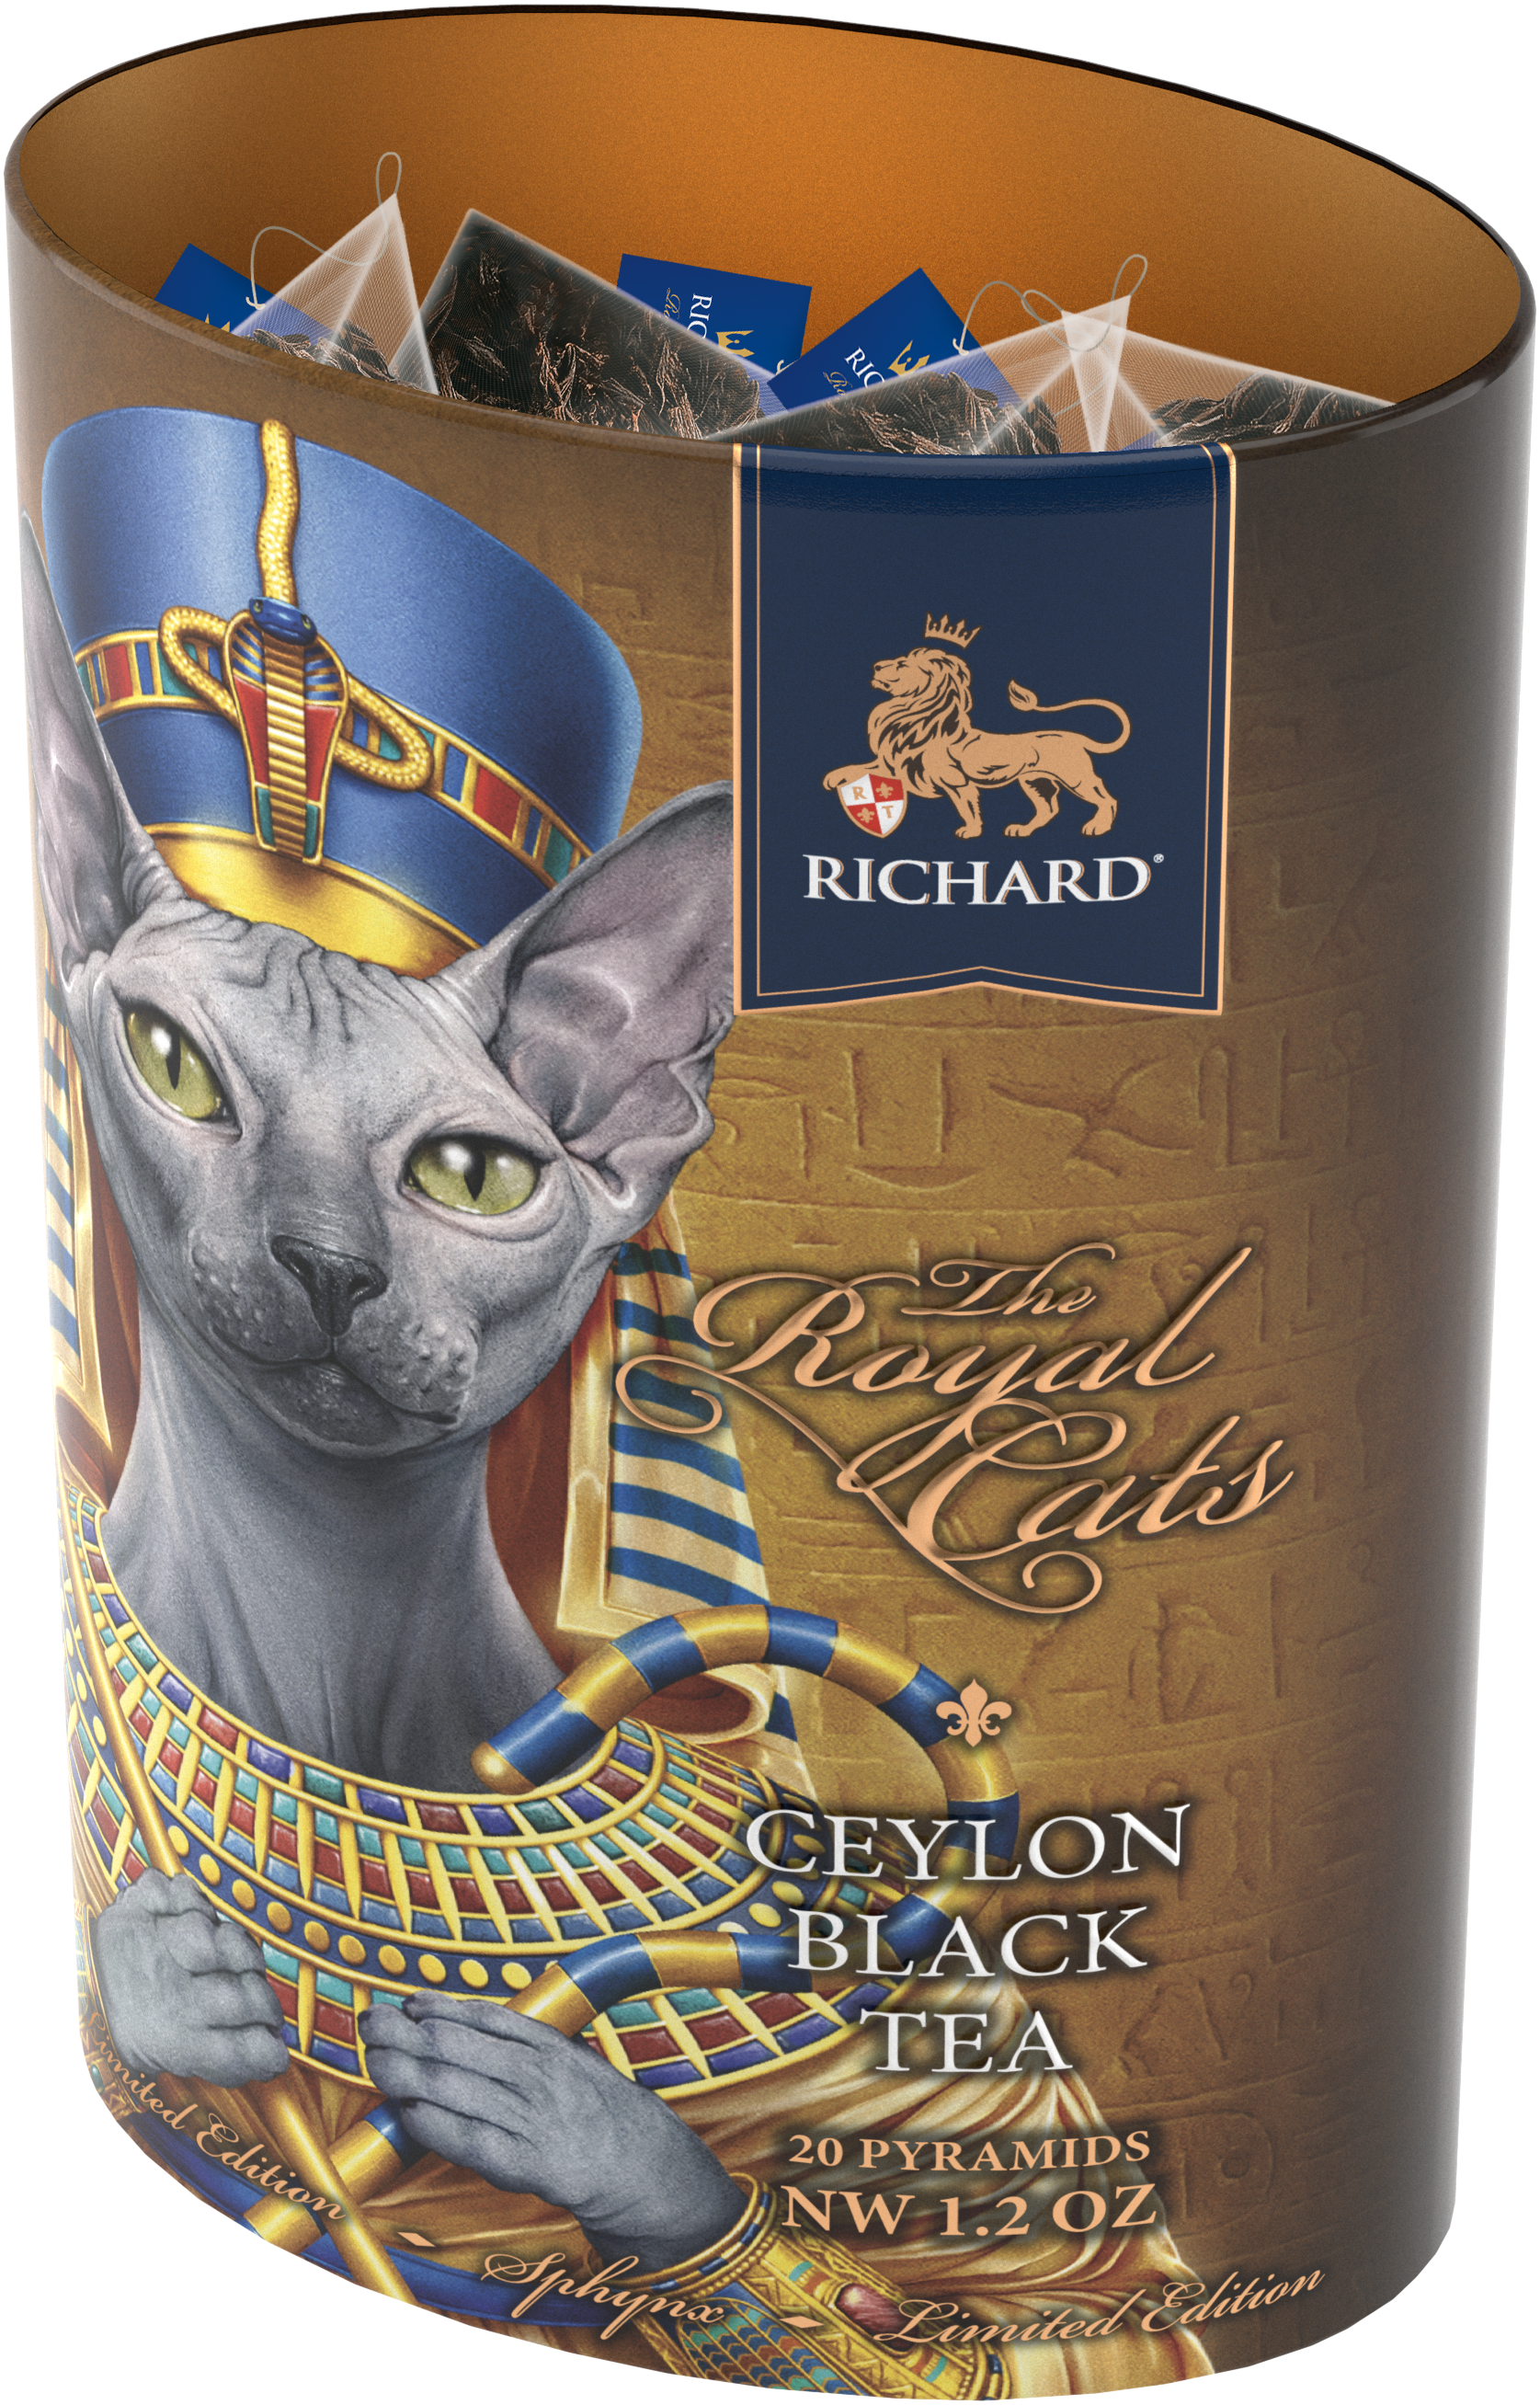 Richard Royal Macskák, fekete tea, 34g, 20 piramis-filterben, Sphynx - RichardTeavn - vásároljon a 2990.00 Ft